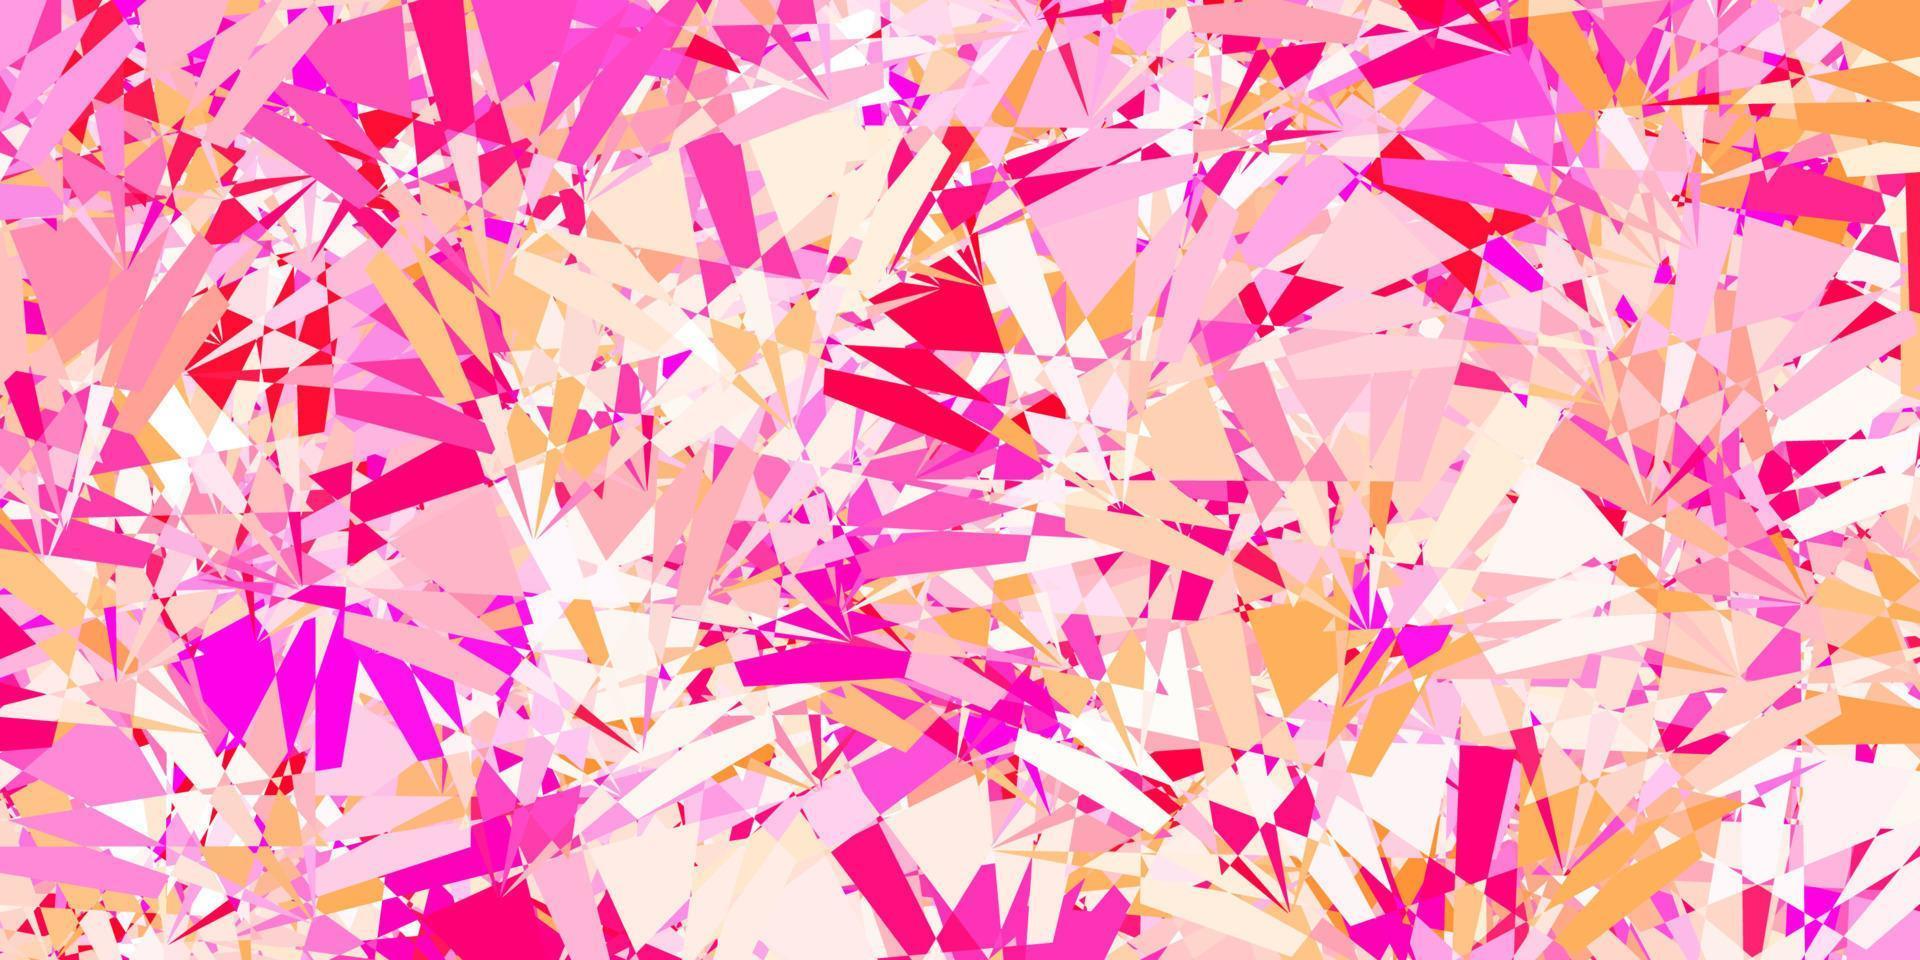 modello vettoriale rosa chiaro con forme poligonali.